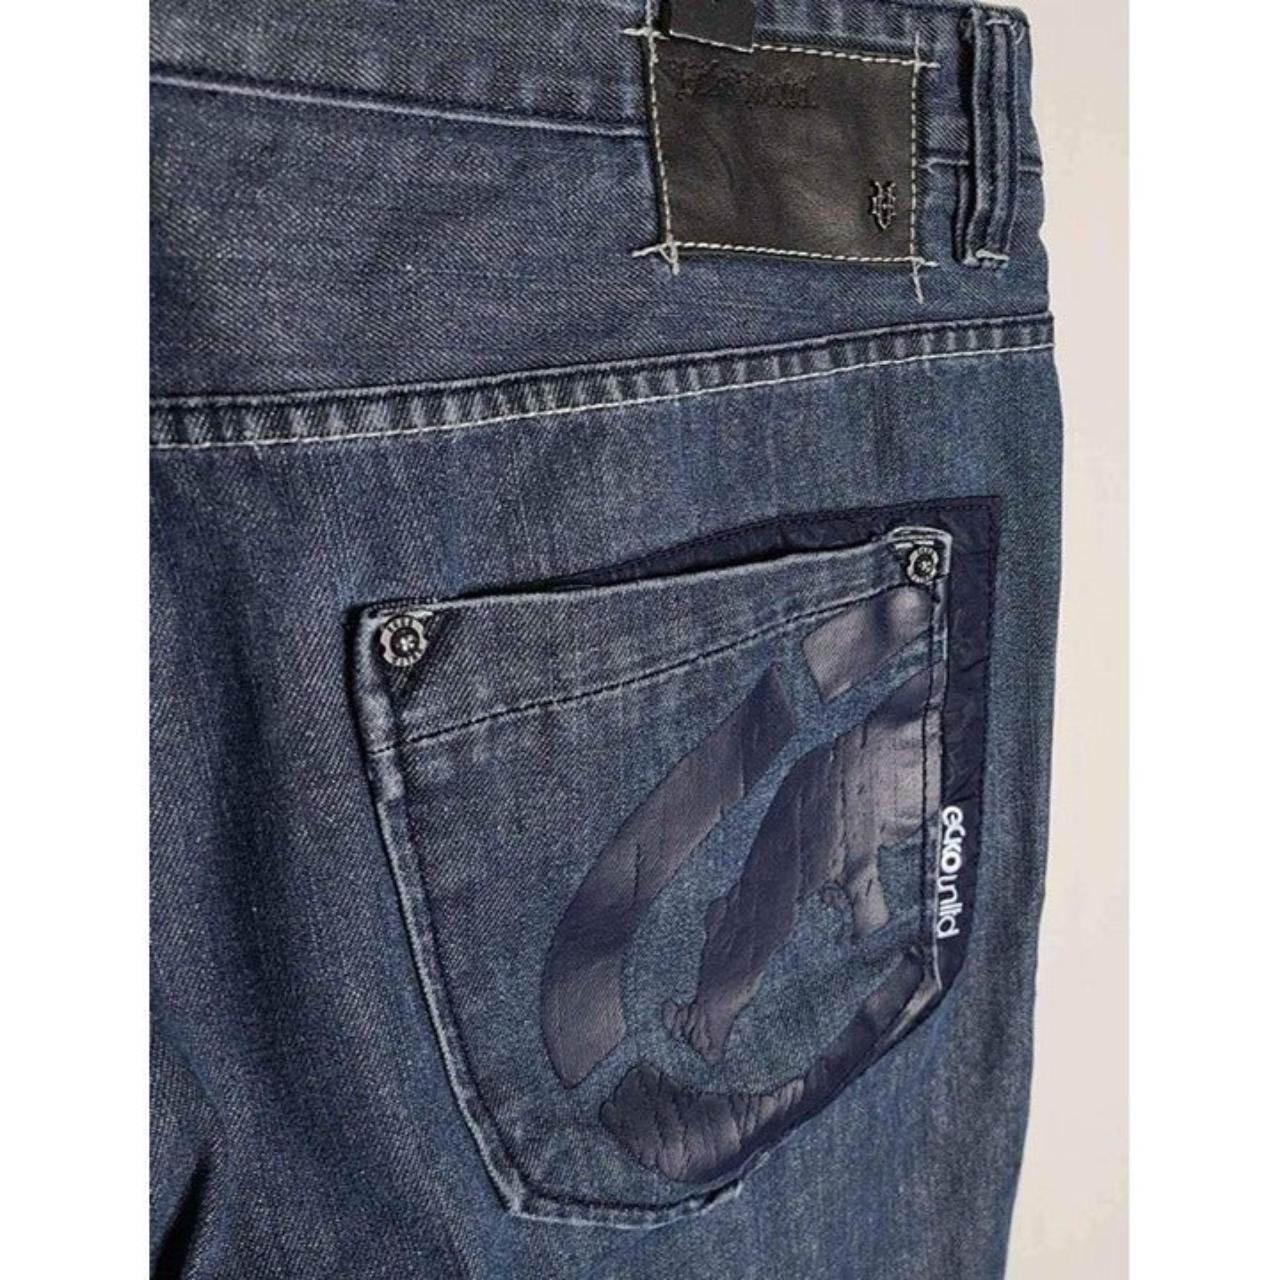 Ecko Unltd. Men's Jeans (3)